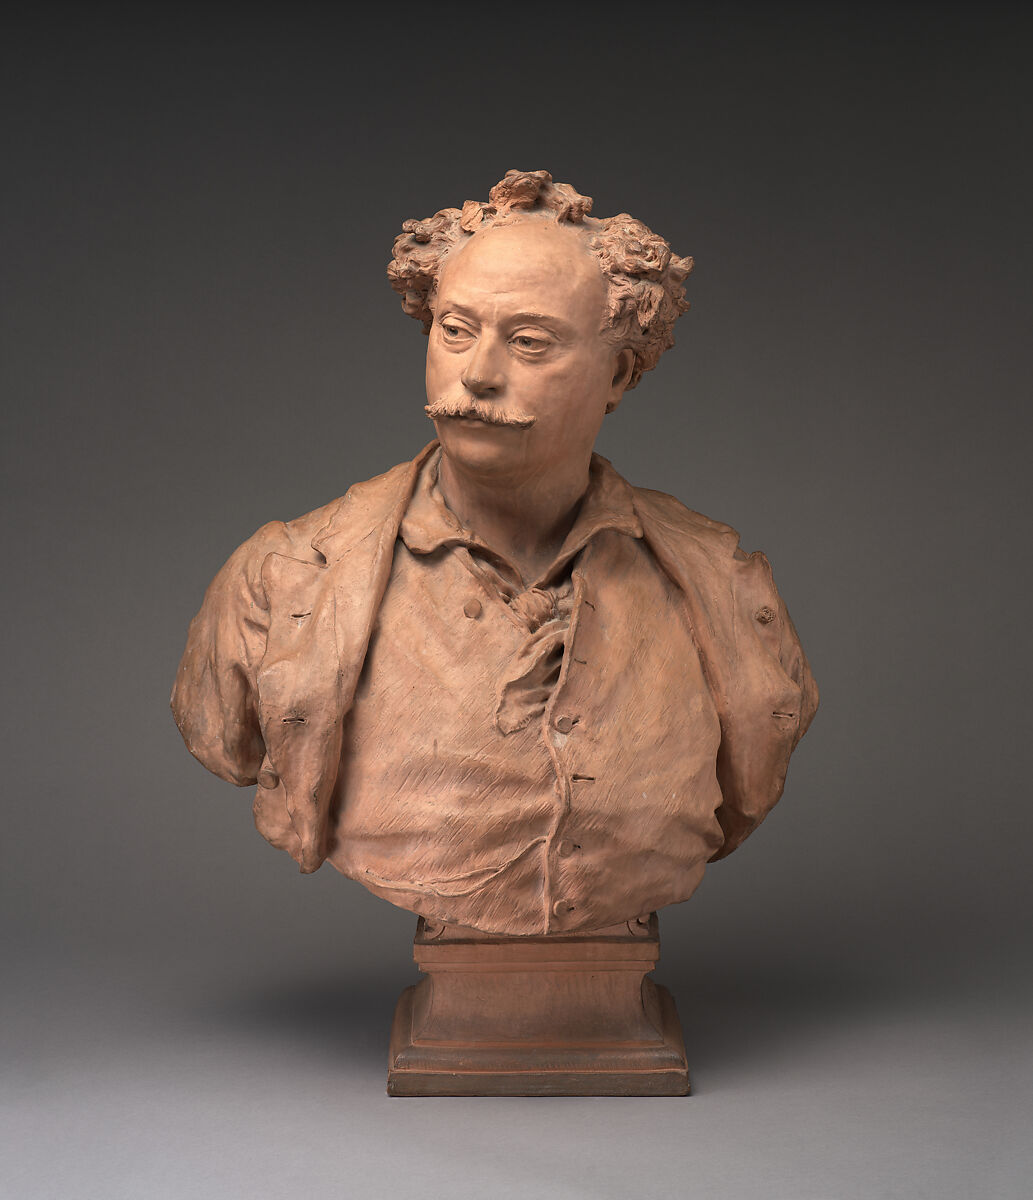 Alexandre Dumas fils, Jean-Baptiste Carpeaux (French, Valenciennes 1827–1875 Courbevoie), Cast terracotta, French 